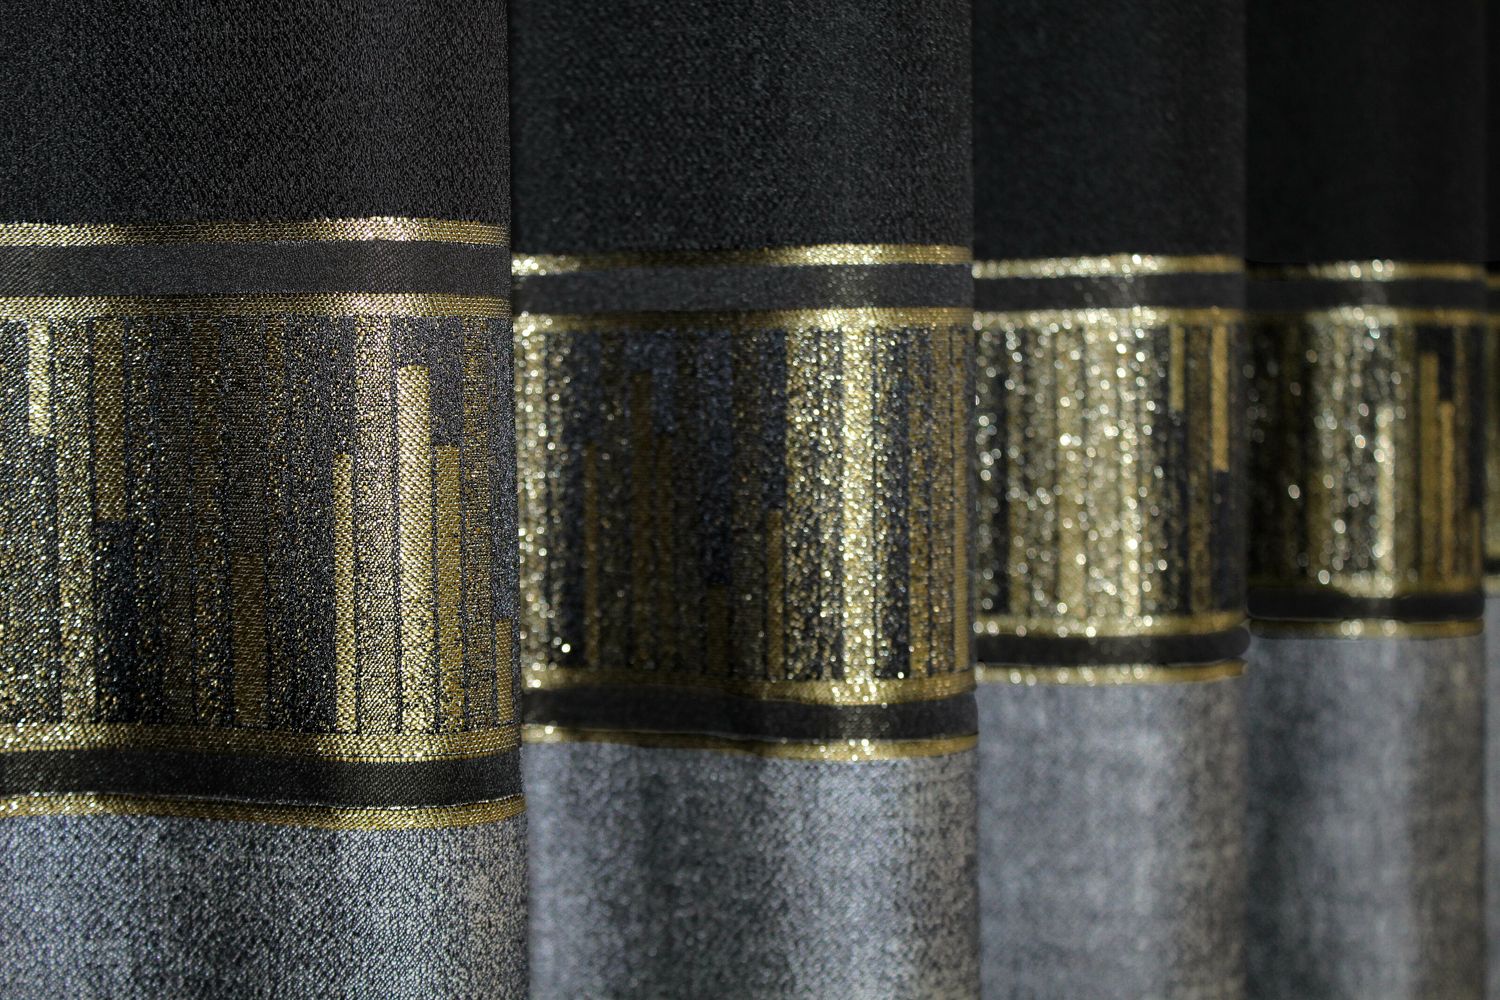 Шторы из ткани лен коллекции "ANZIO" цвет черно-серый с золотистым 1308ш, Черно-серый с золотистым, Комплект штор (2шт. 1,45х3м.), Классические, Без ламбрекена, Длинные, 1,45 м., 3,0 м., 145, 300, 2 - 3 м., Нет, Тесьма